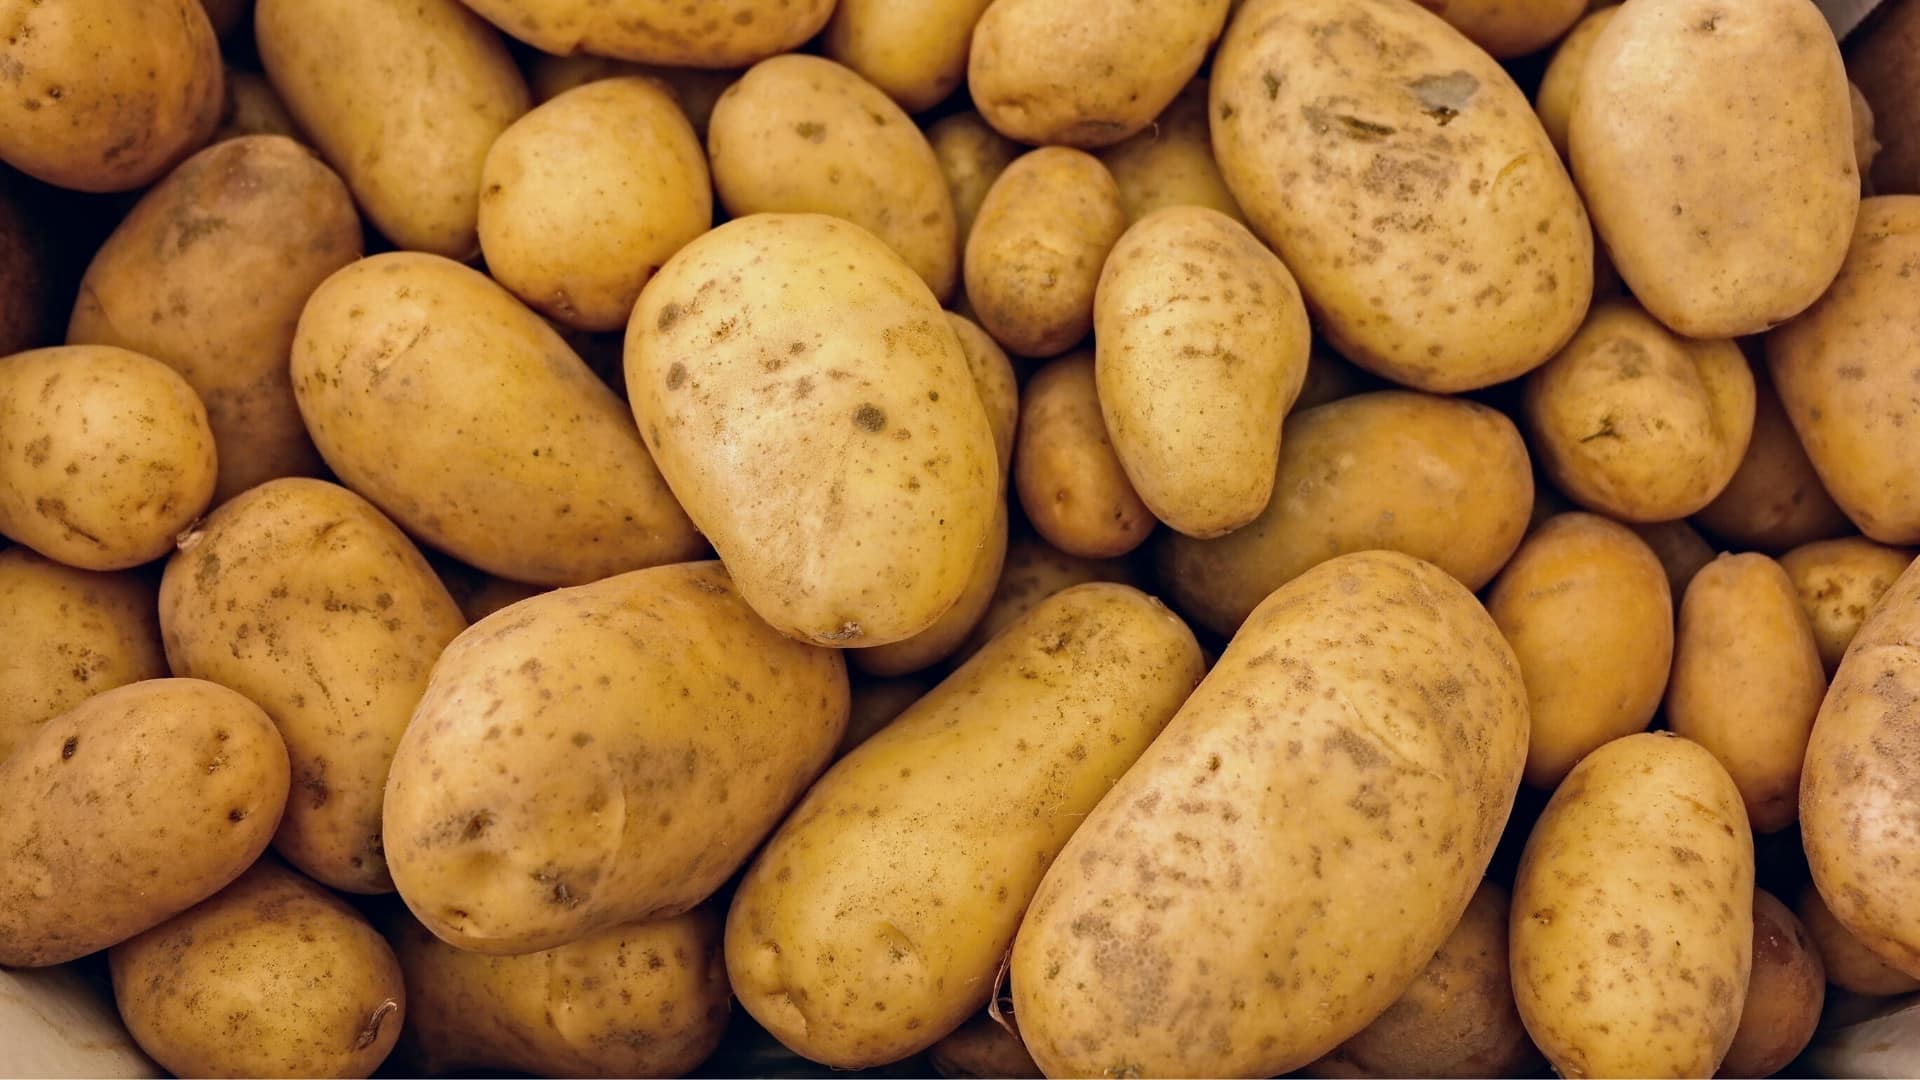 fresh cleaned potatoes